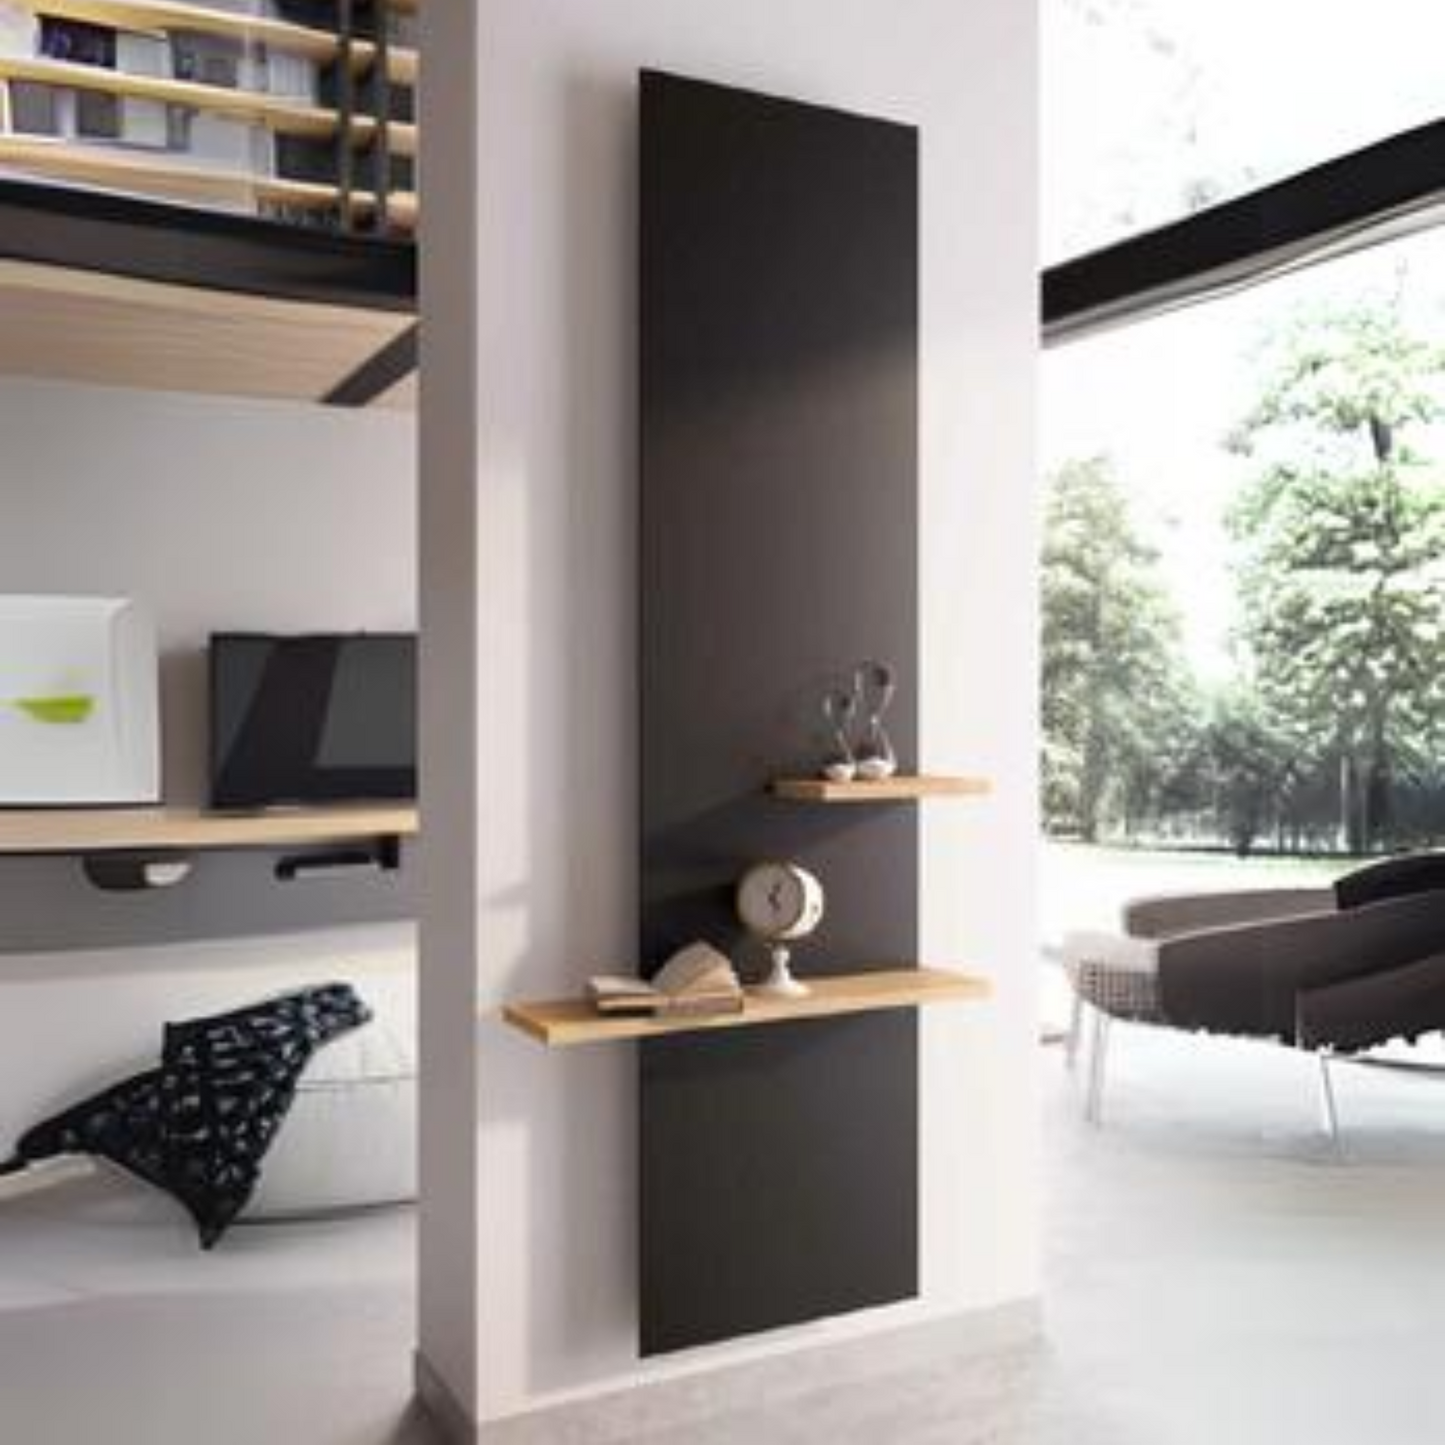 Lynea Wood Shelves for Frame Vertical